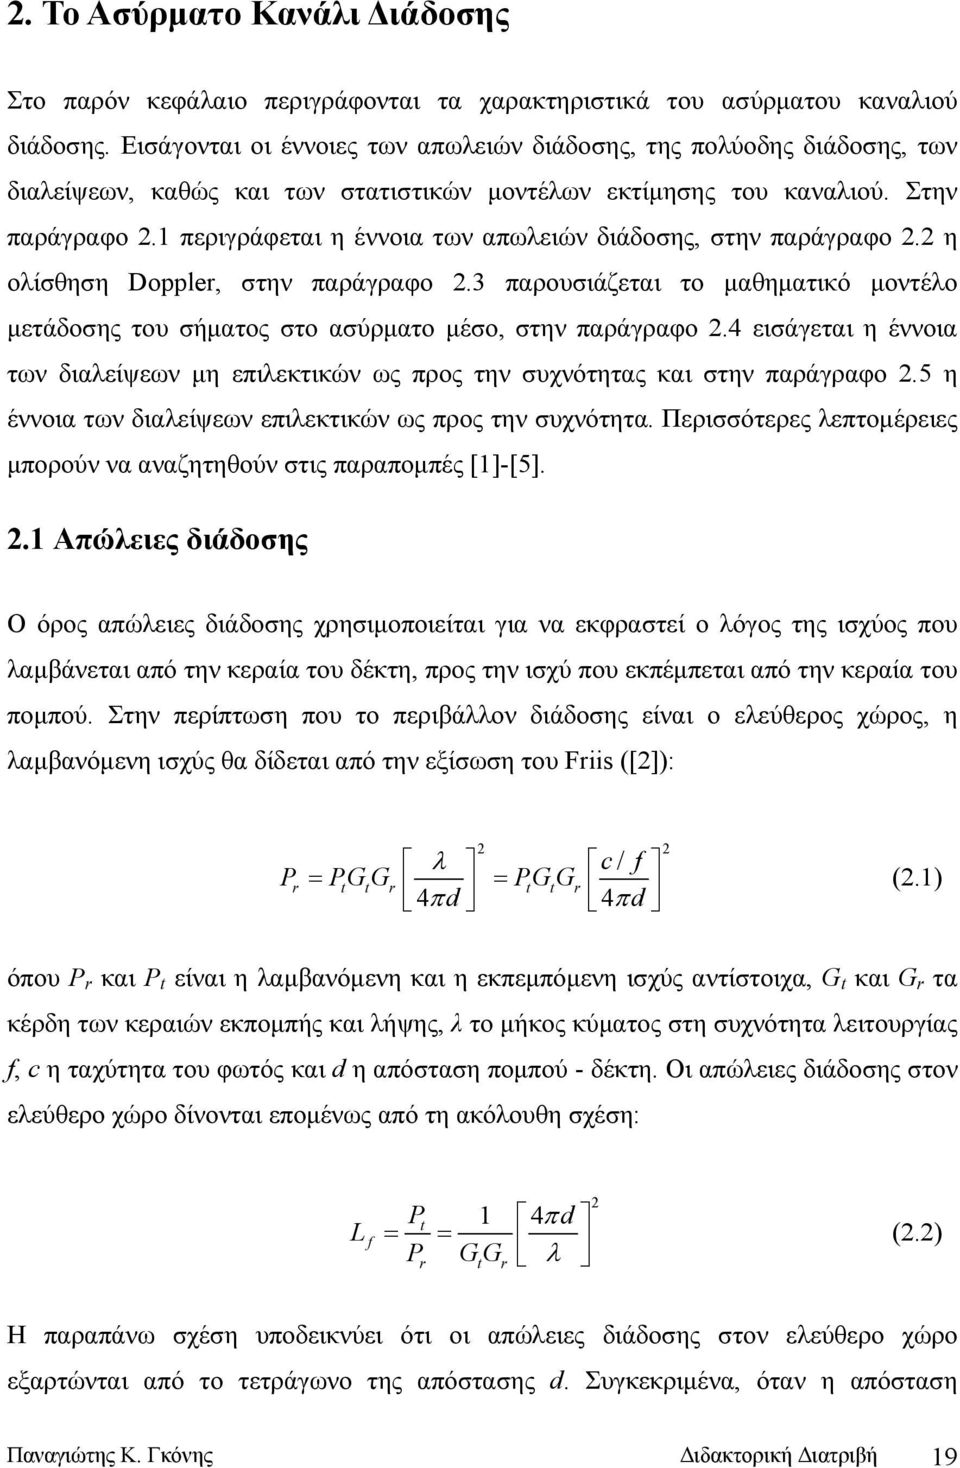 1 περιγράφεται η έννοια των απωλειών διάδοσης, στην παράγραφο 2.2 η ολίσθηση Doppler, στην παράγραφο 2.3 παρουσιάζεται το μαθηματικό μοντέλο μετάδοσης του σήματος στο ασύρματο μέσο, στην παράγραφο 2.